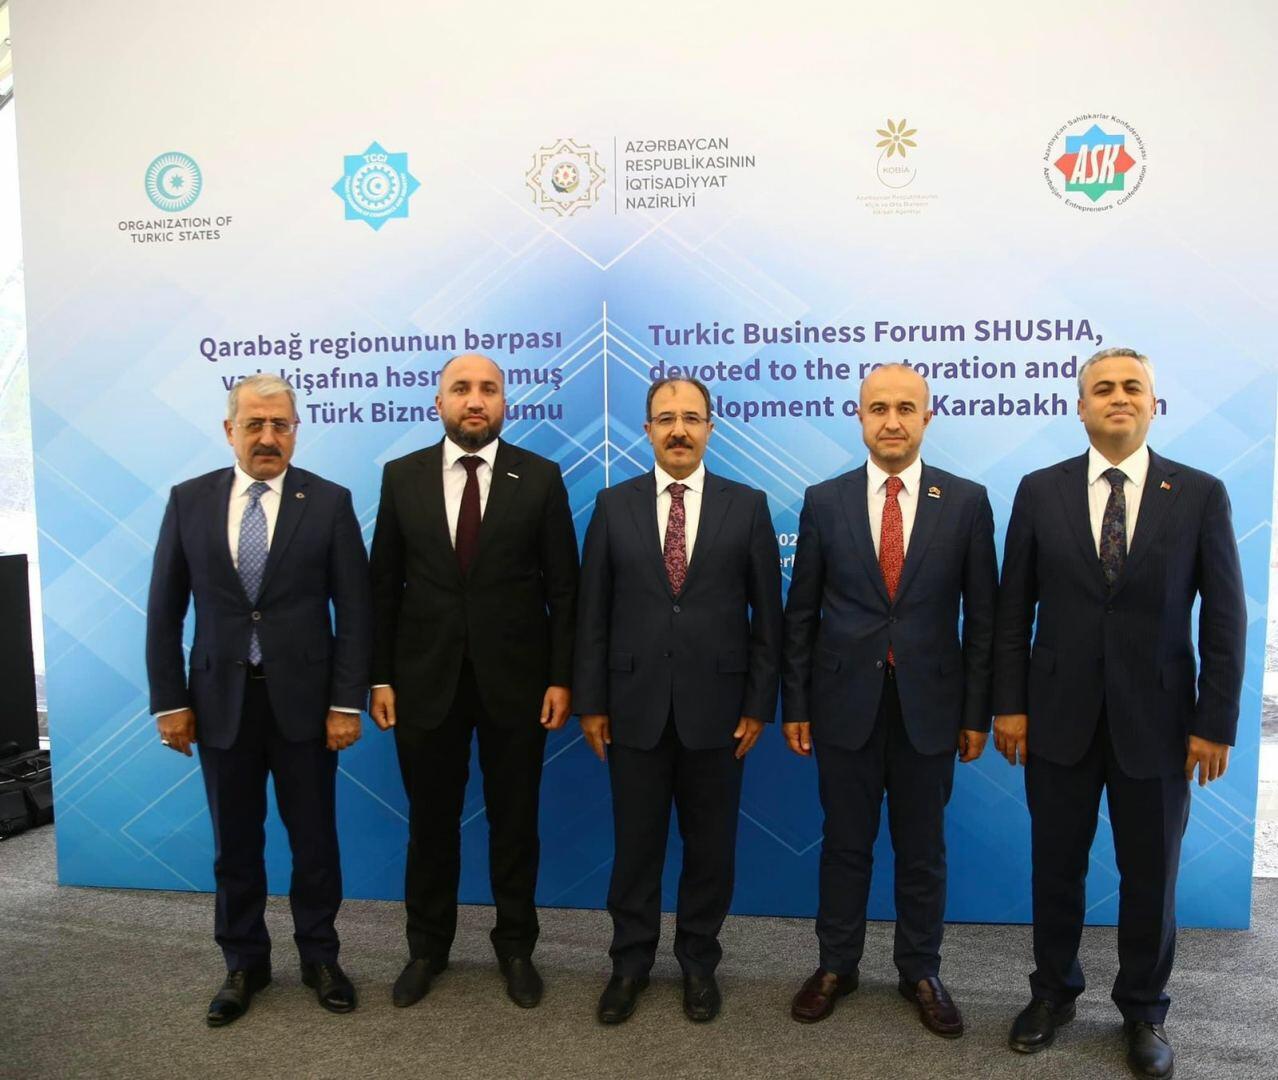 MÜSİAD-Azerbaycan нацелен на увеличение прямых иностранных инвестиций в экономику Азербайджана